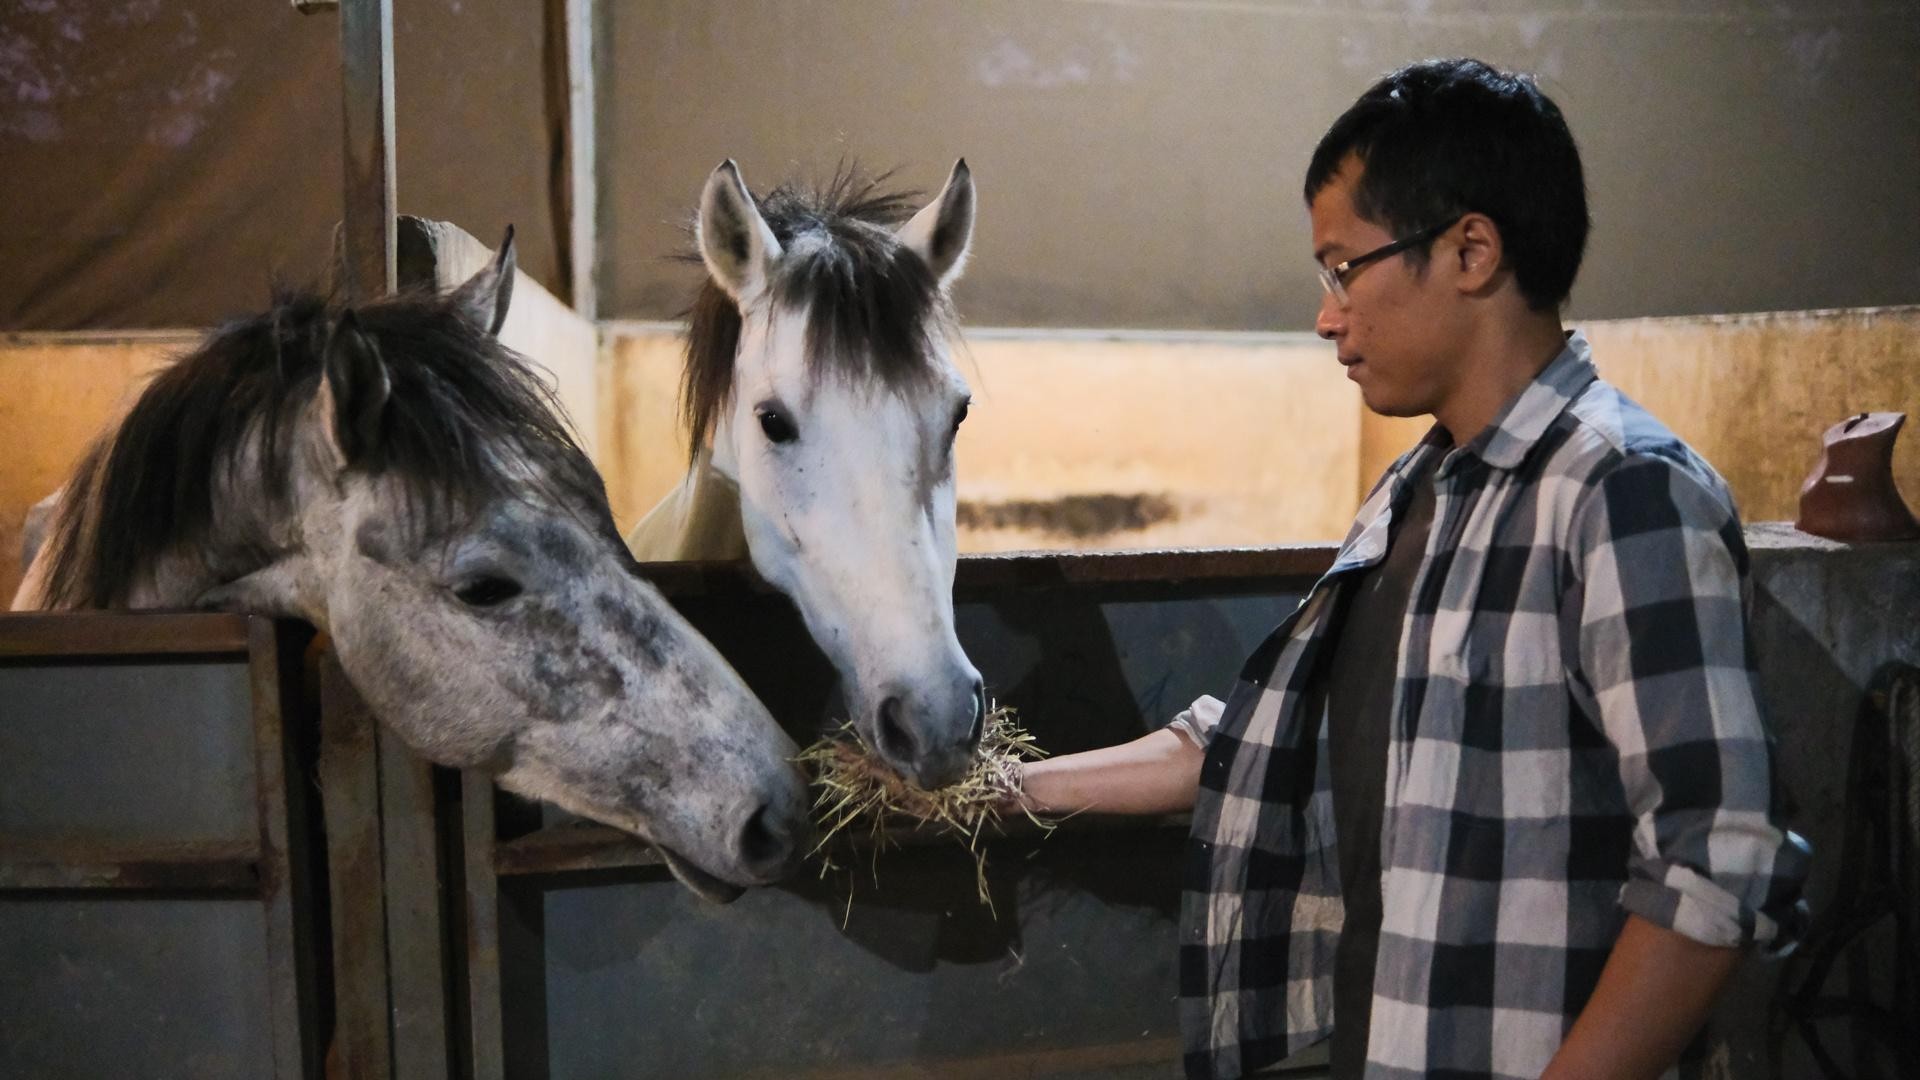 Huấn luyện viên dạy cưỡi ngựa theo phong cách châu Âu tại Hà Nội ảnh 19